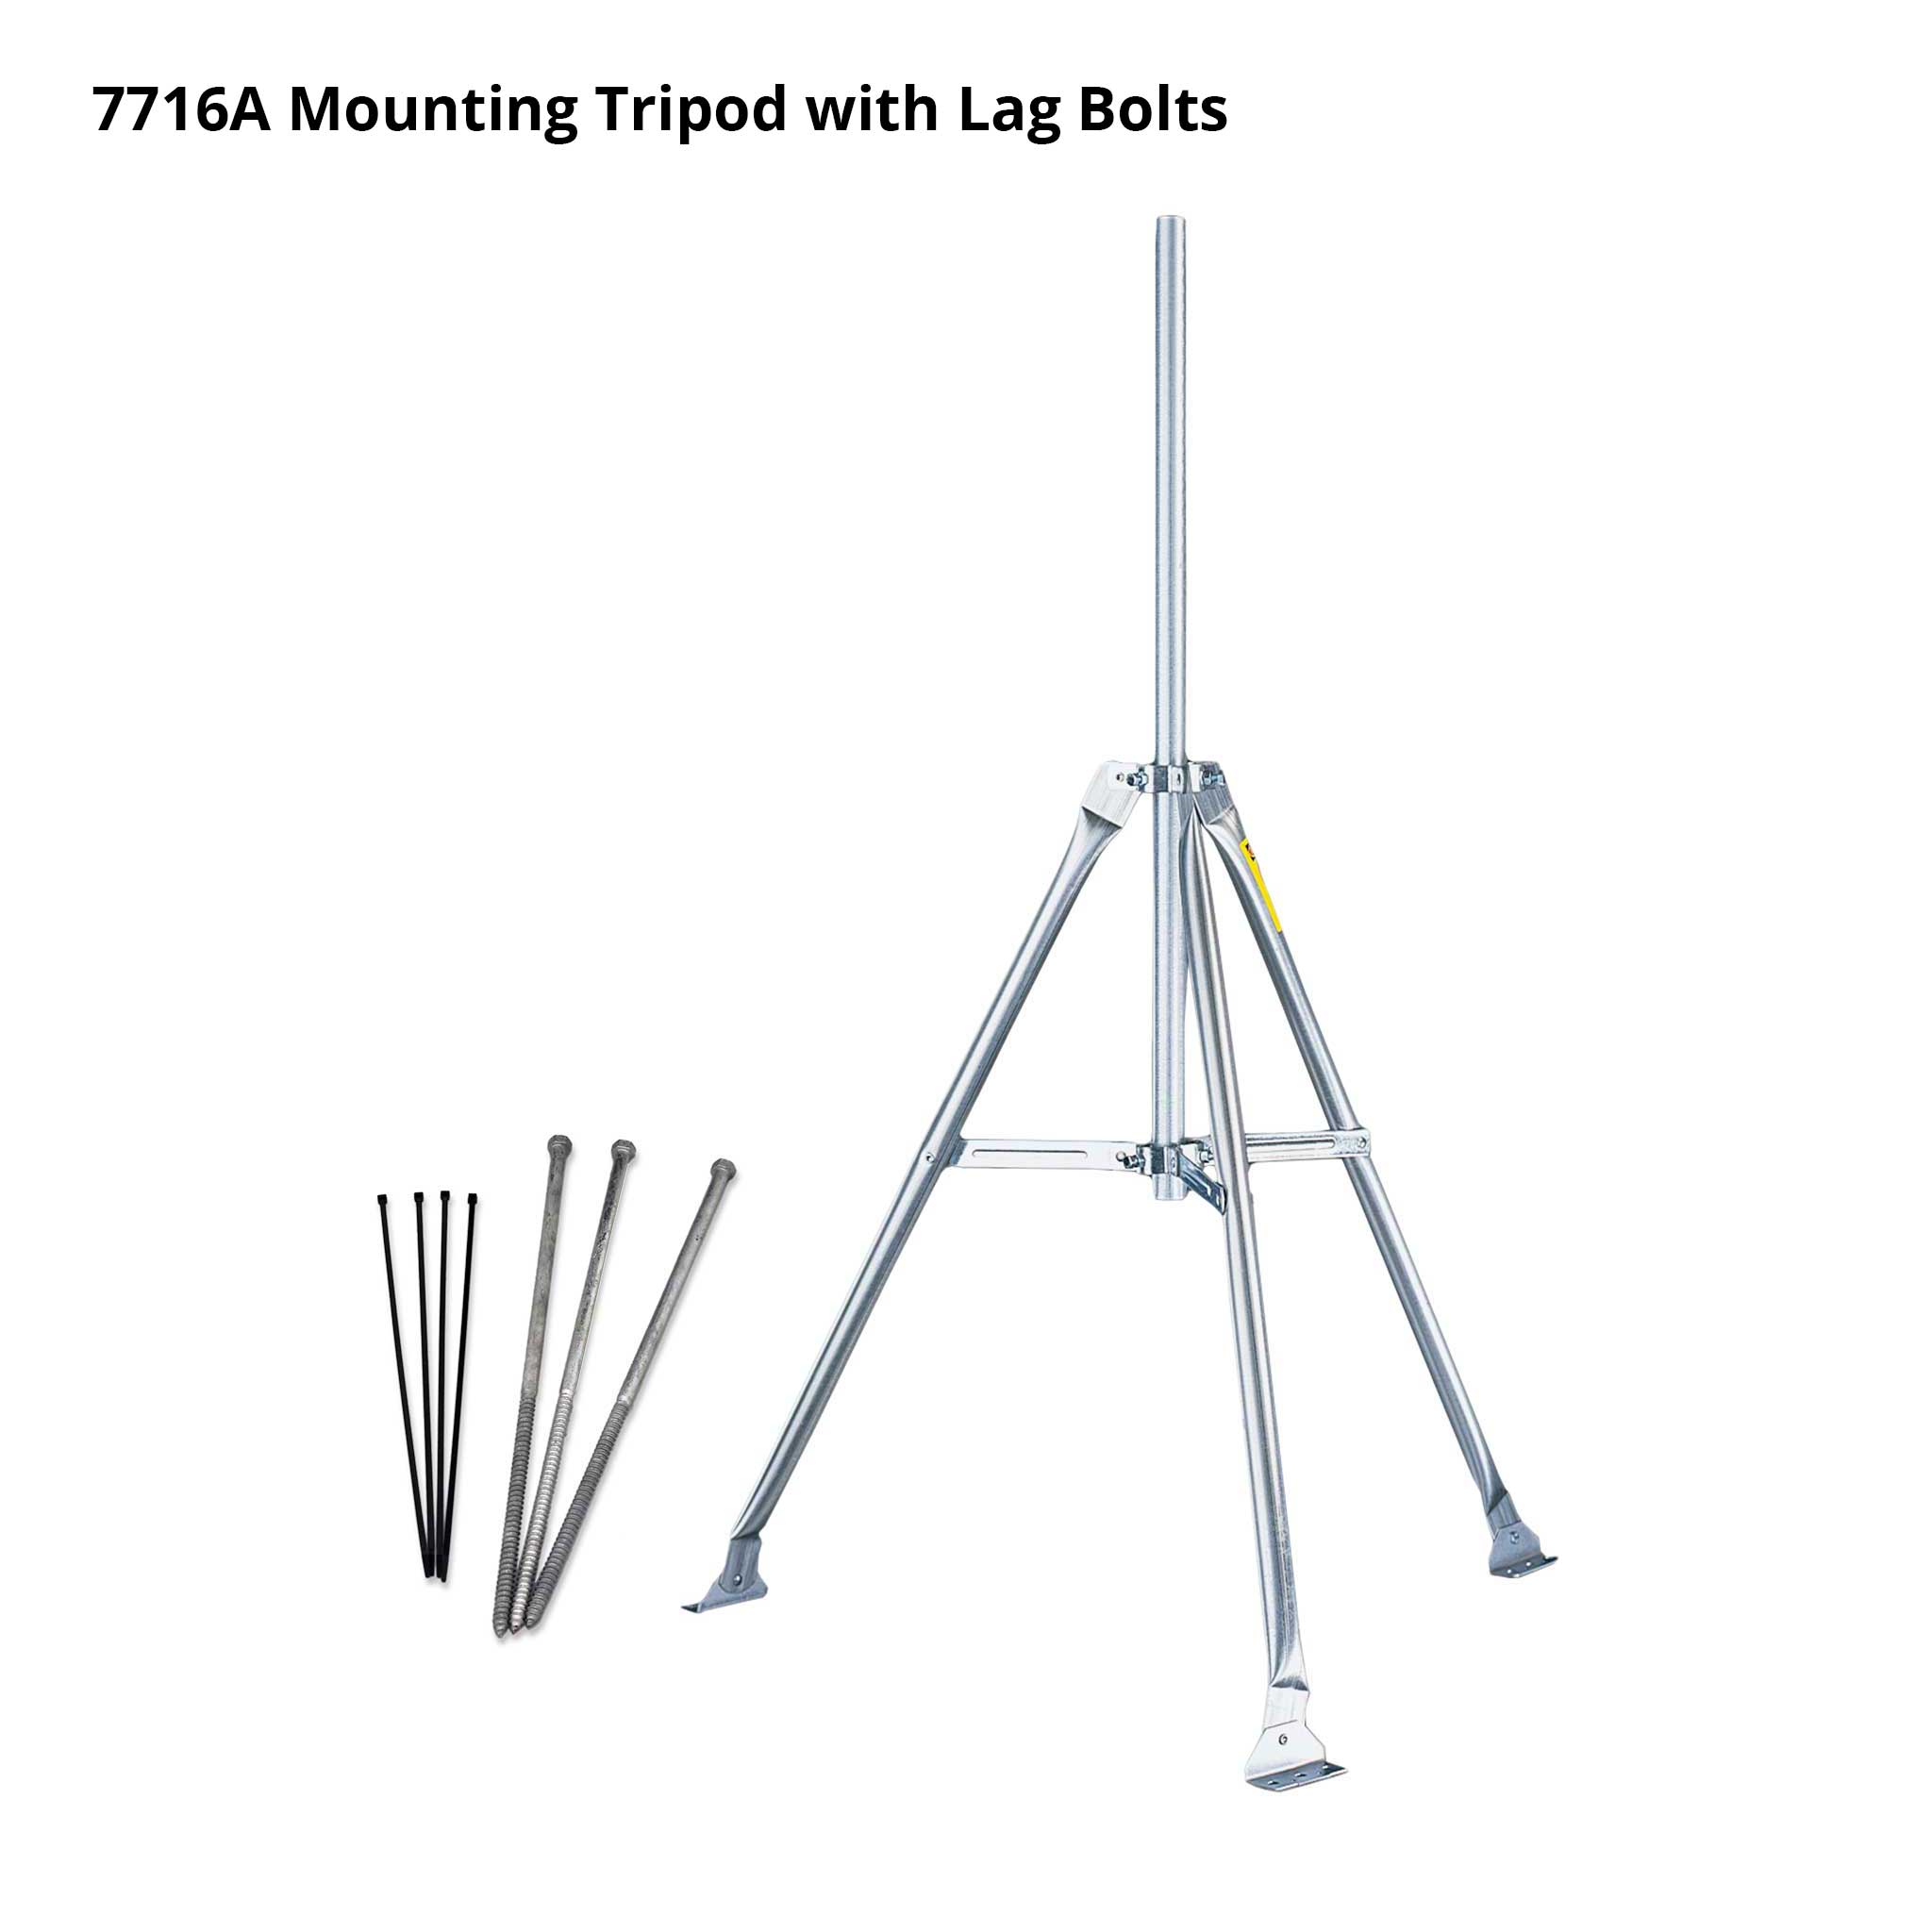 Mounting Tripod - SKU 7716A, 7716